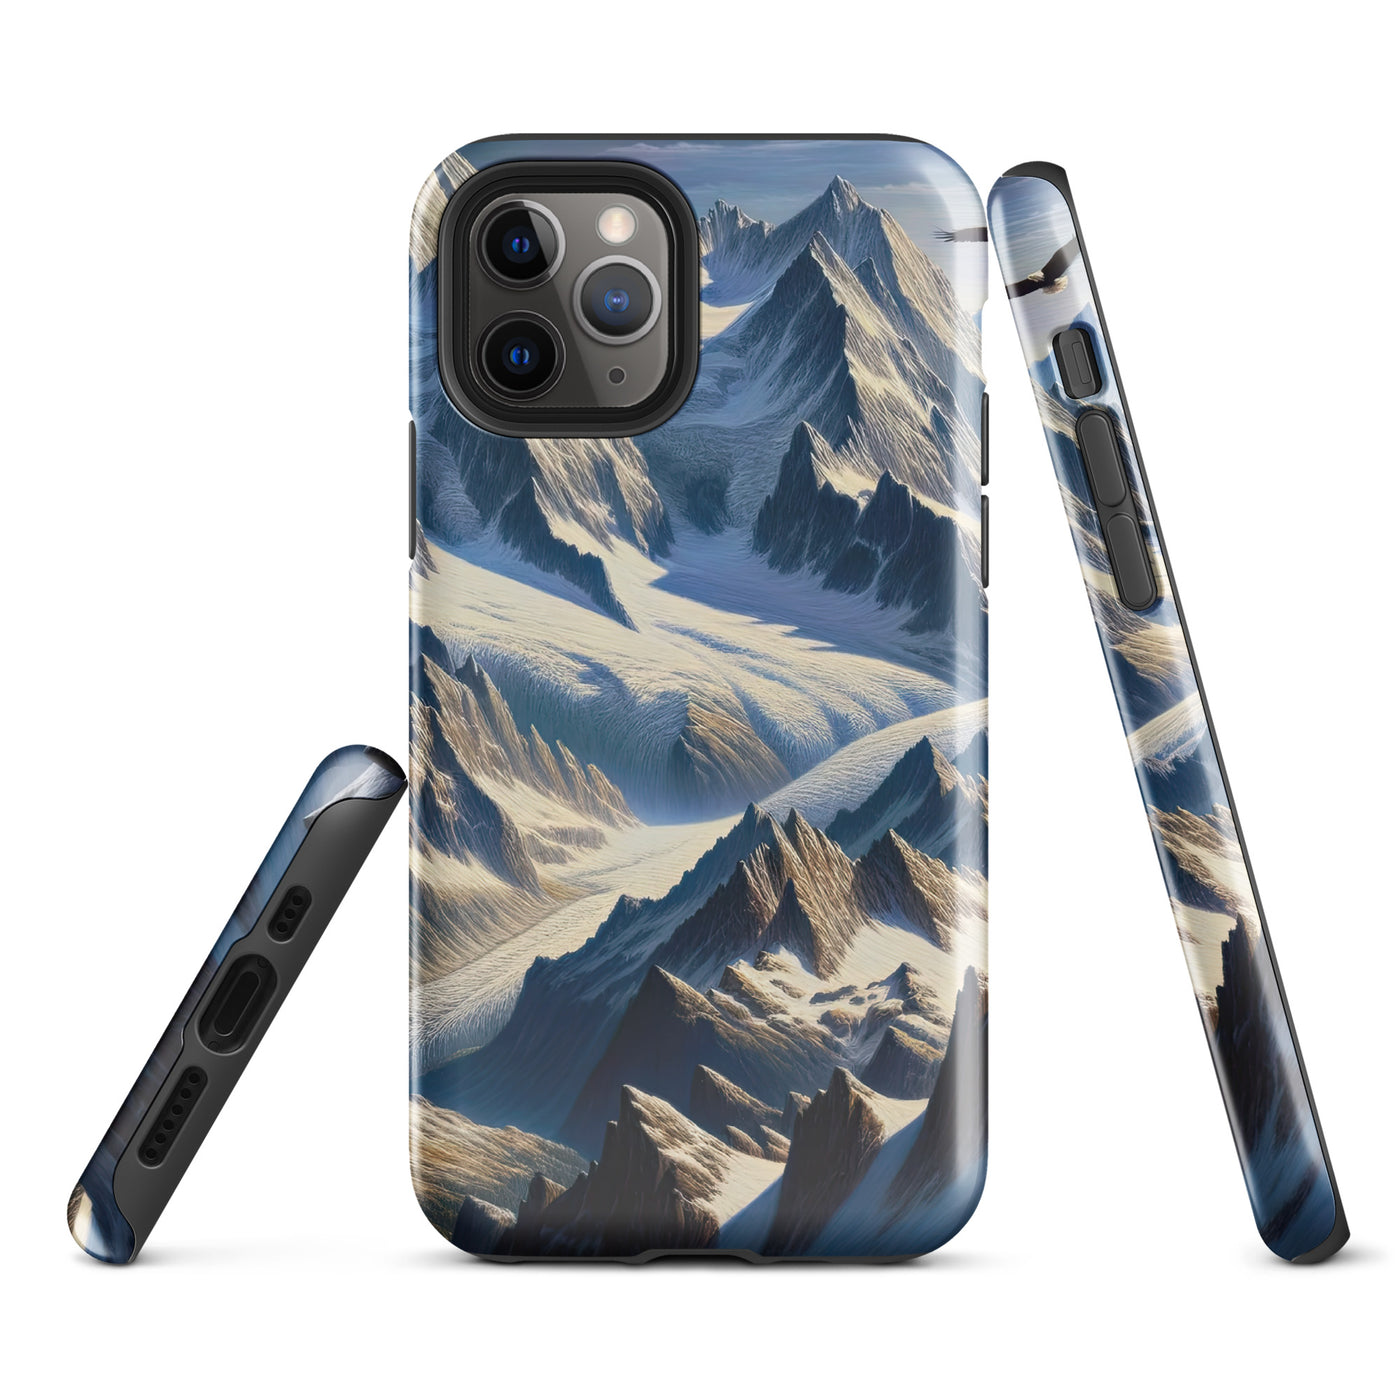 Ölgemälde der Alpen mit hervorgehobenen zerklüfteten Geländen im Licht und Schatten - iPhone Schutzhülle (robust) berge xxx yyy zzz iPhone 11 Pro